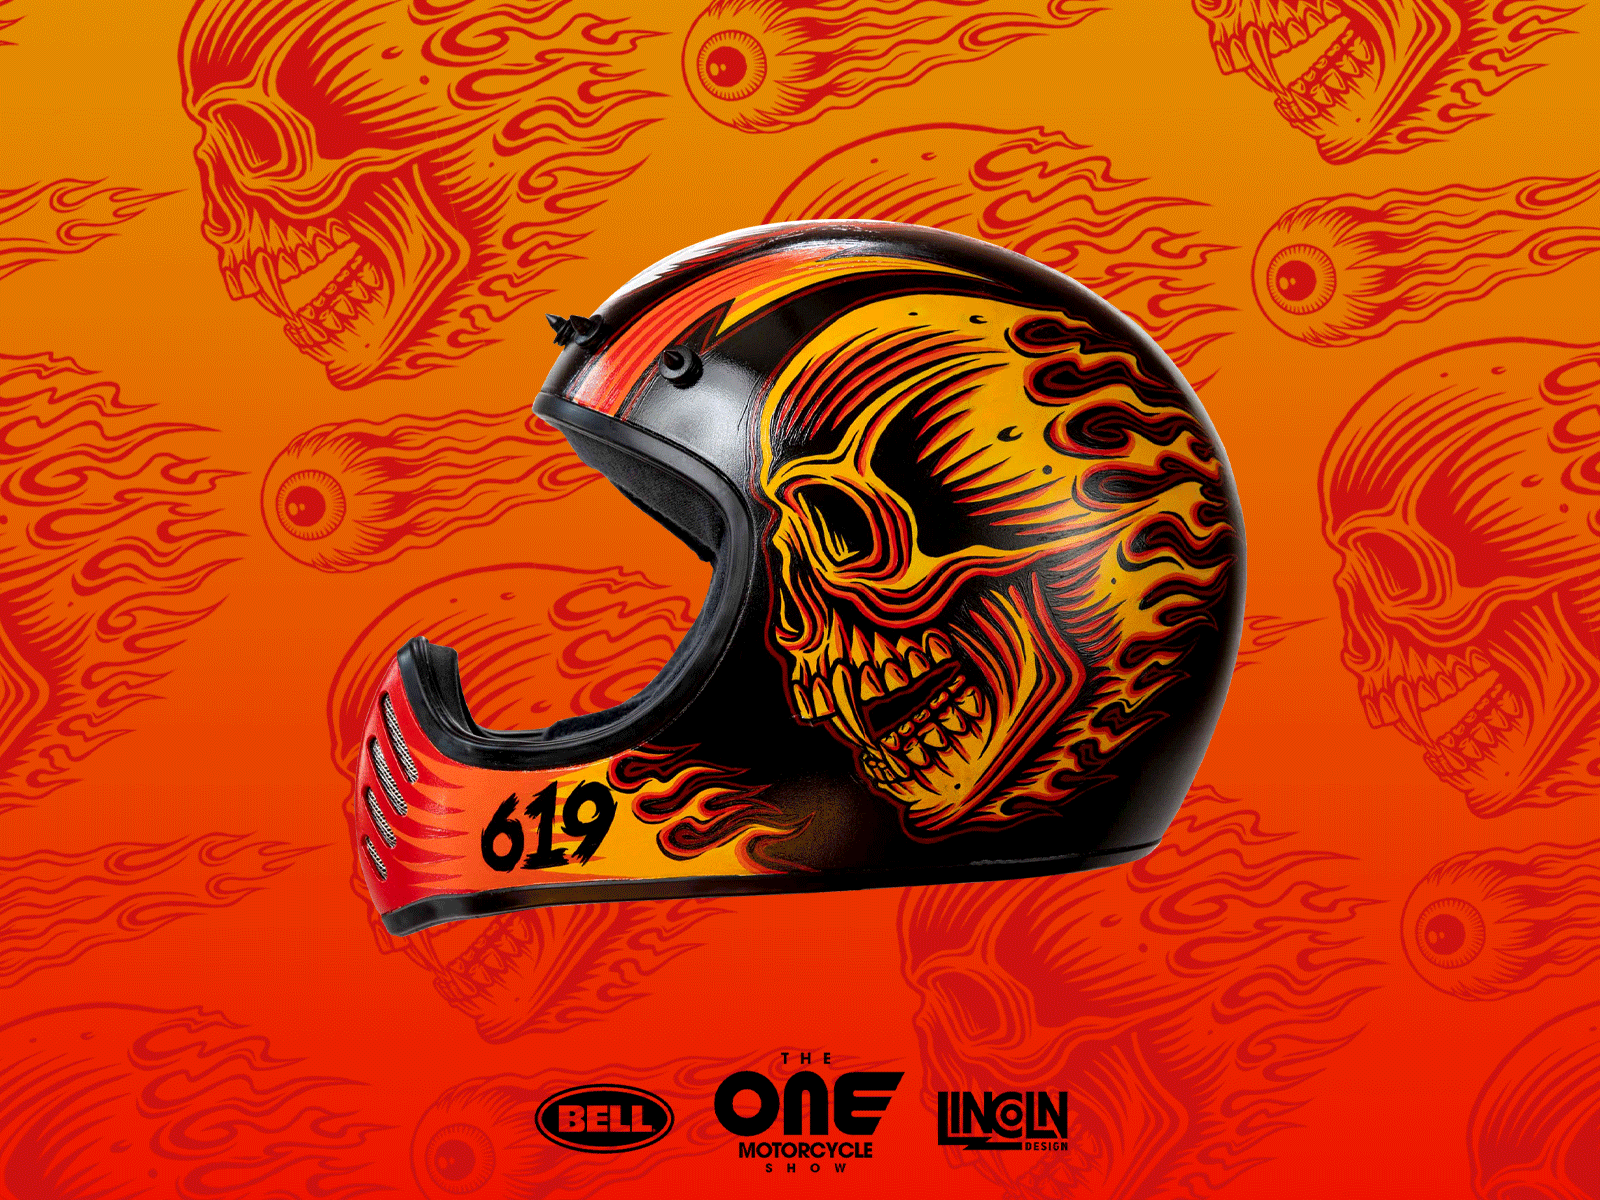 21 Helmets Art Show | Painted Helmet 21 helmets bradford design eye eye ball harley helmet art illustration lincoln design moto art motocross motorcycle skull